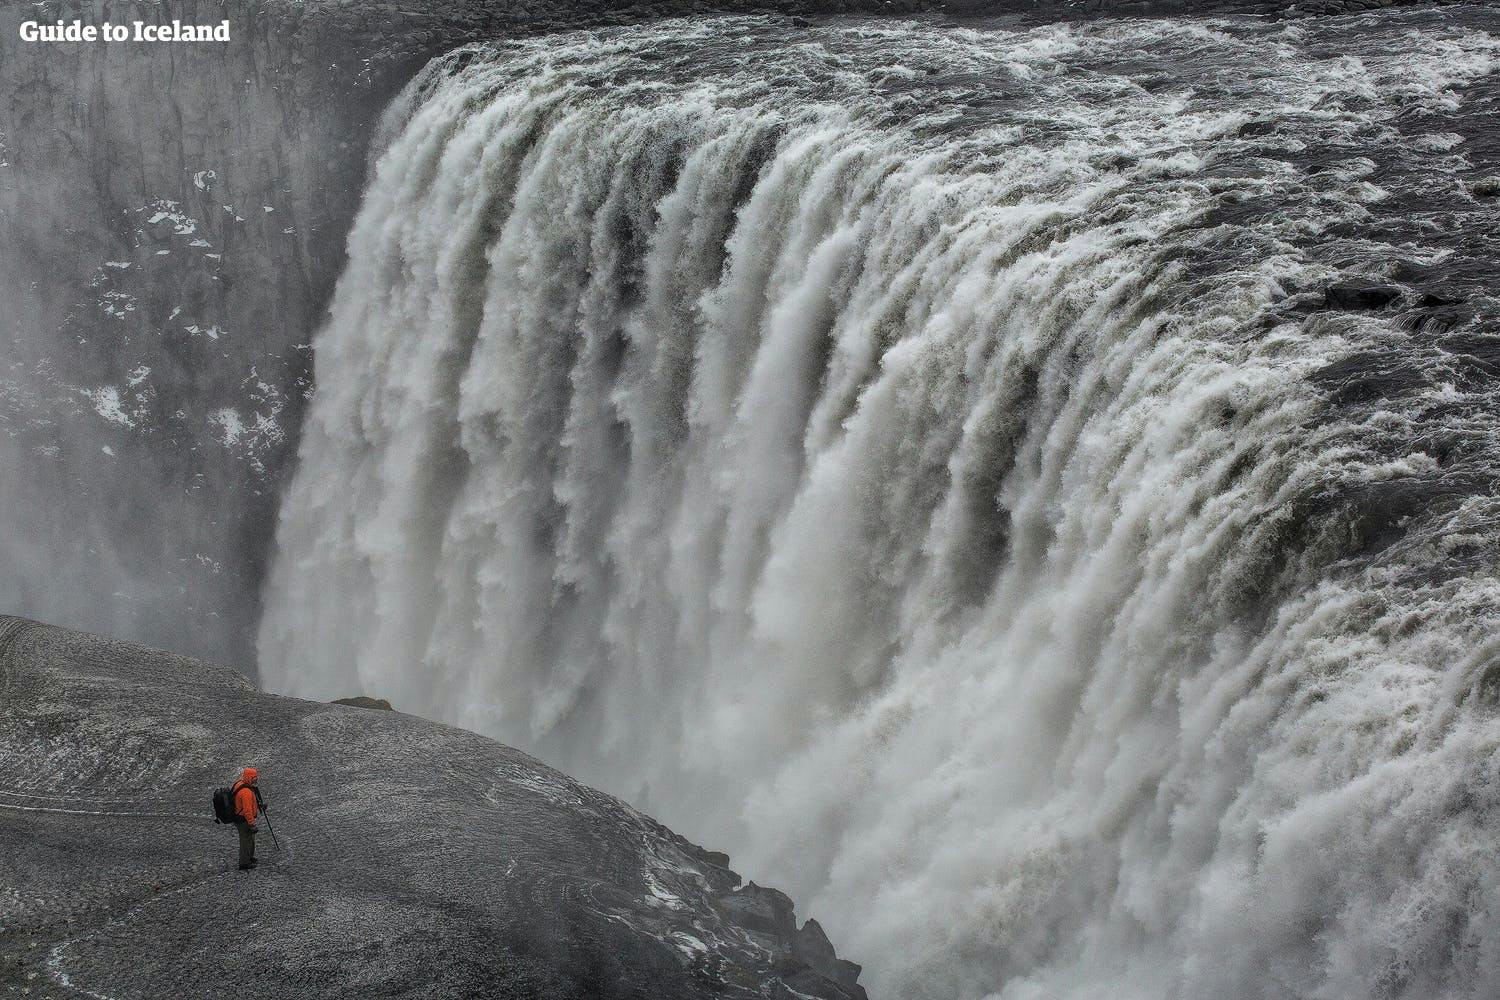 La cascata più potente d'Europa, Dettifoss, nell'Islanda settentrionale.